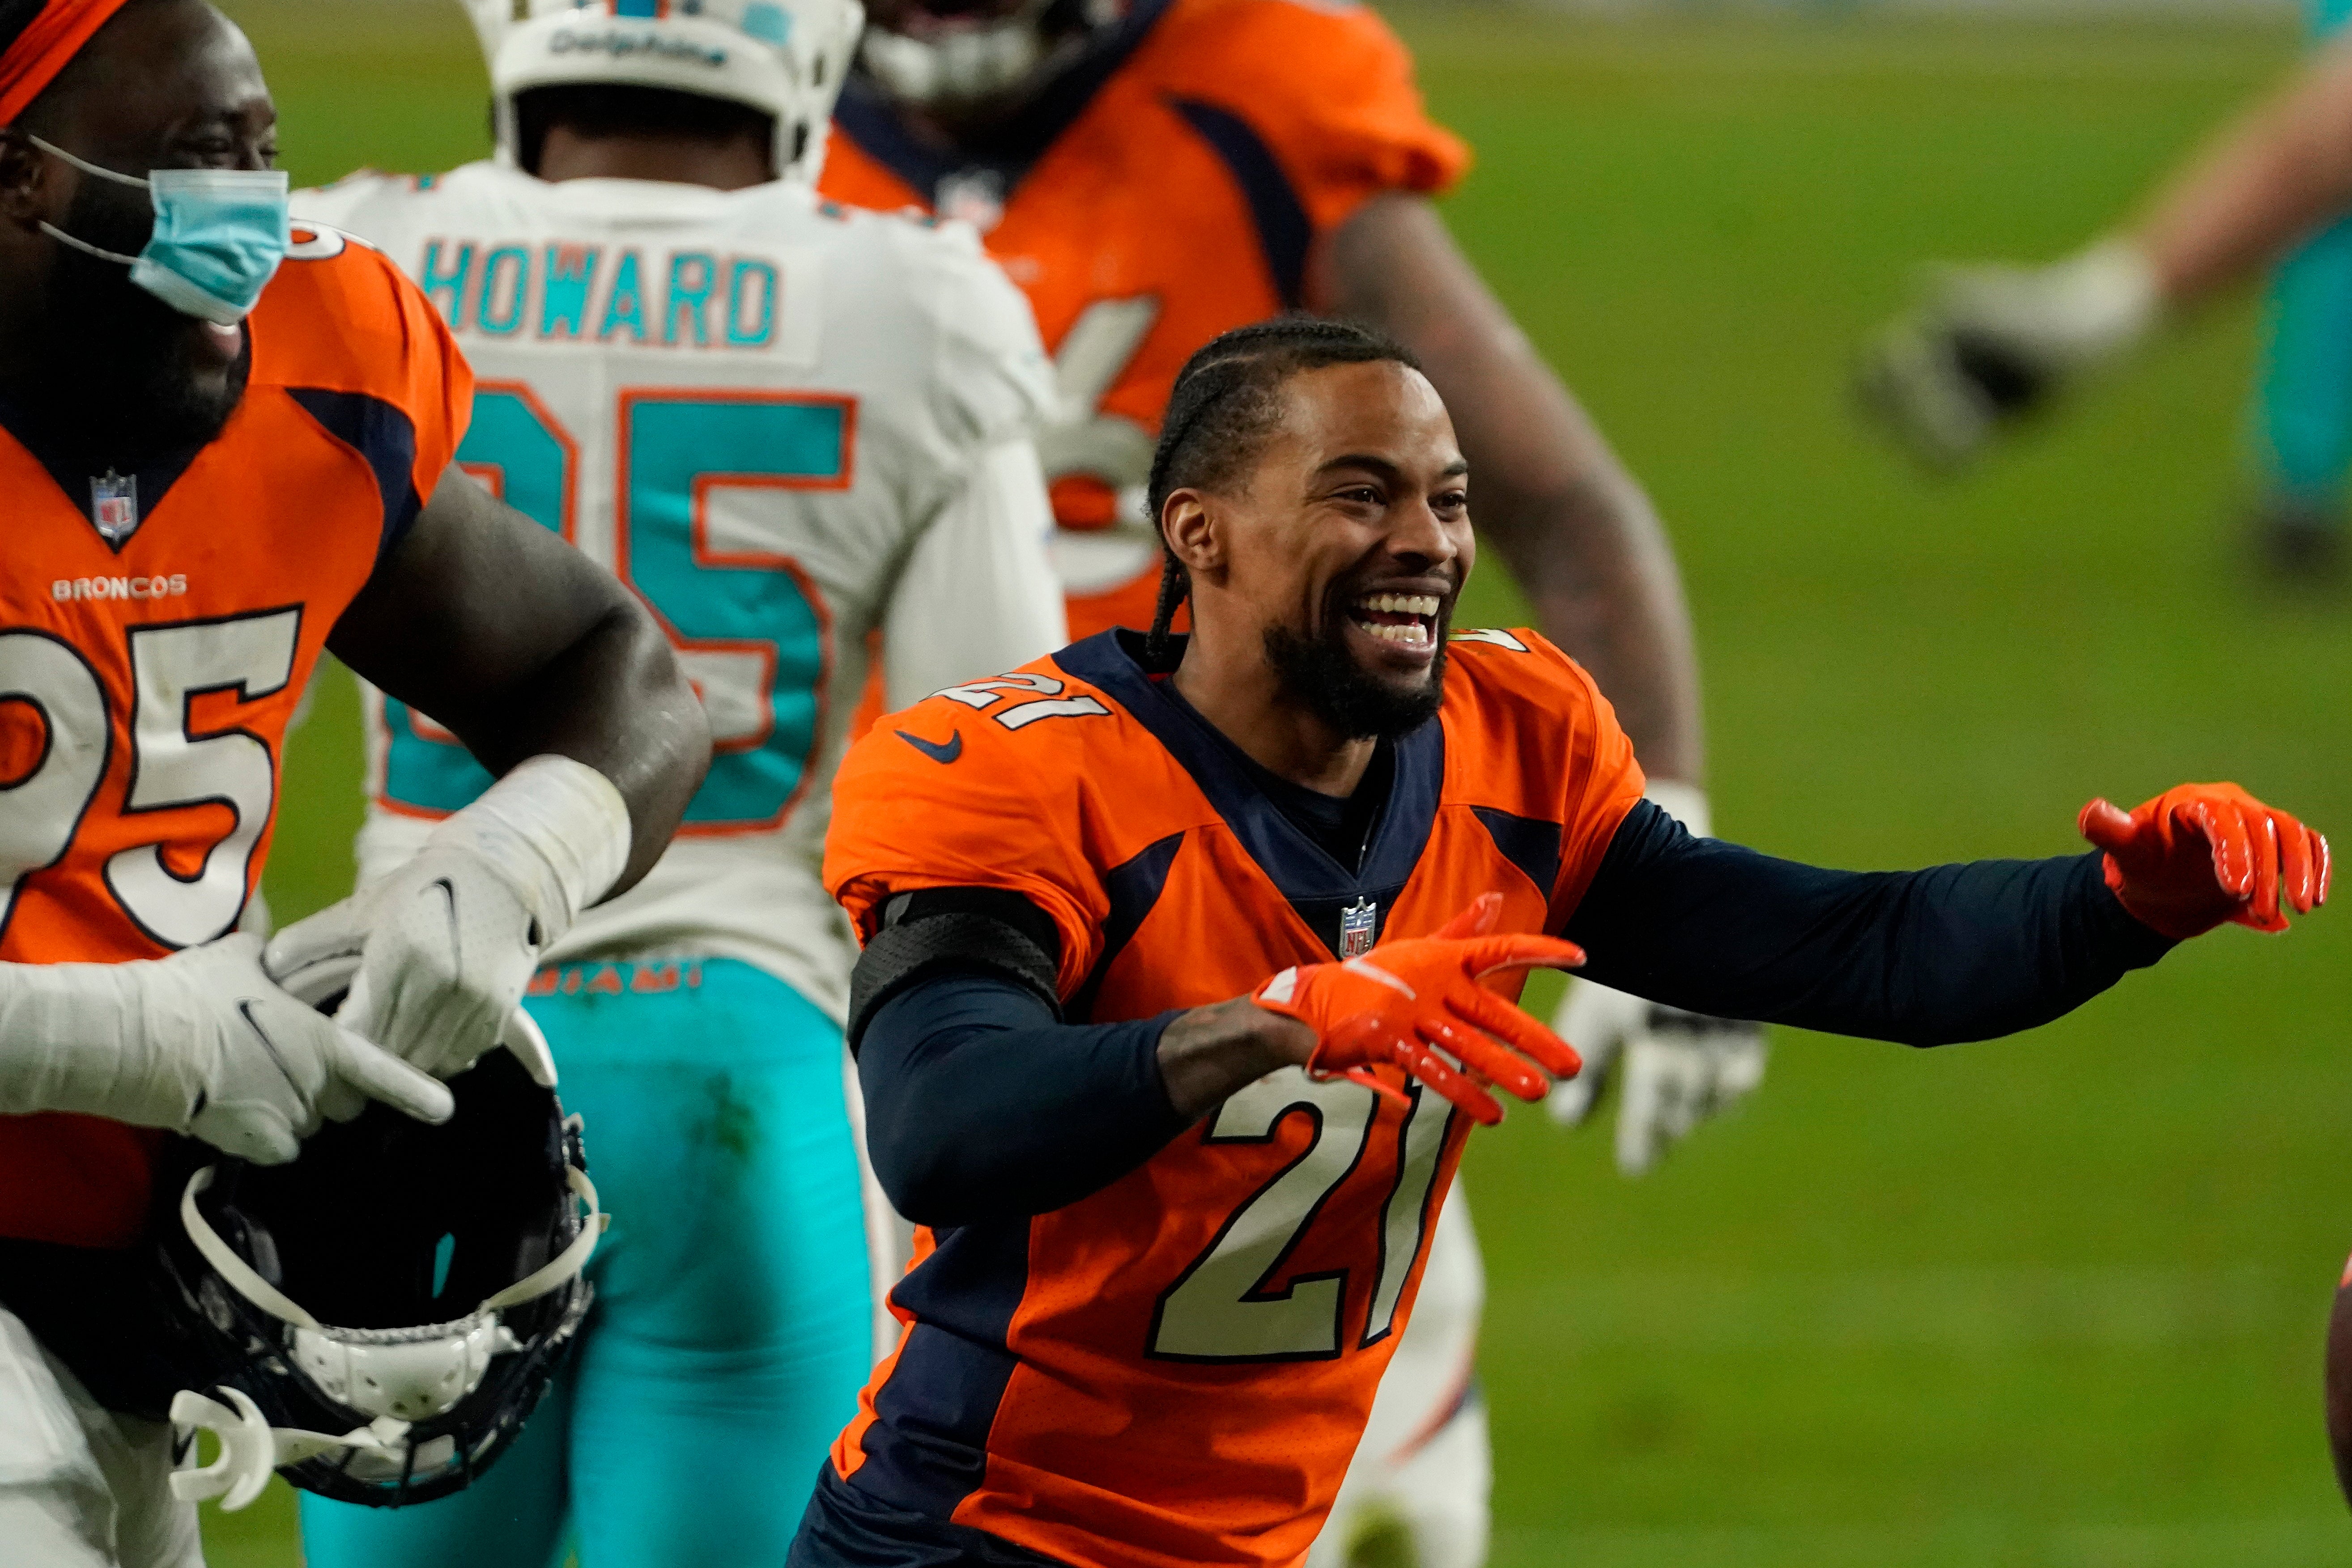 El cornerback de los Broncos de Denver celebra en el juego ante los Dolphins de Miami.